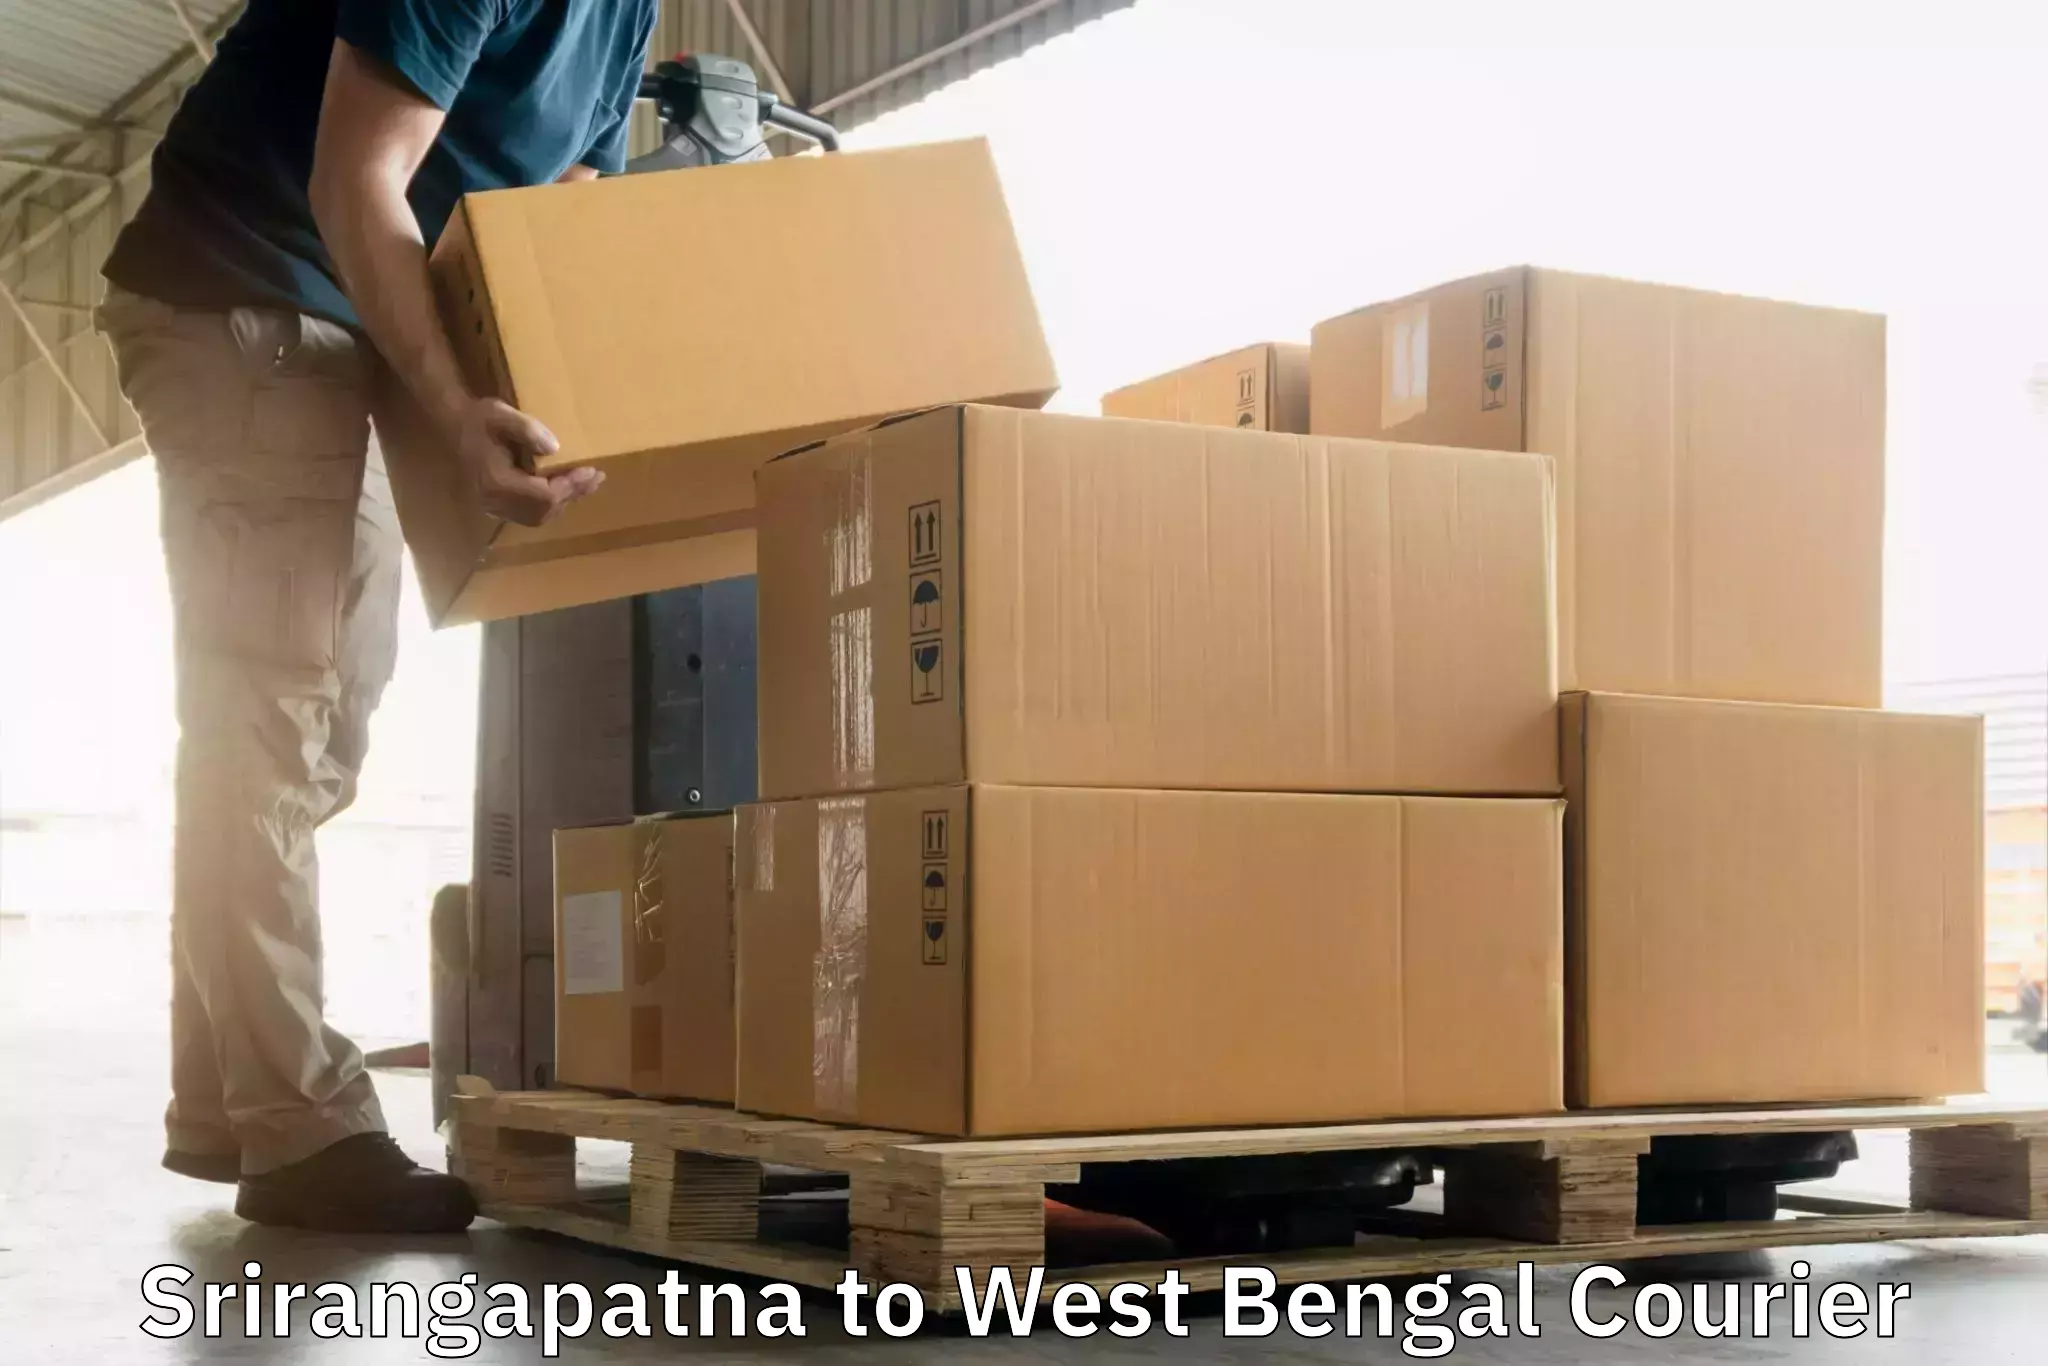 Express mail solutions Srirangapatna to Kolkata Port